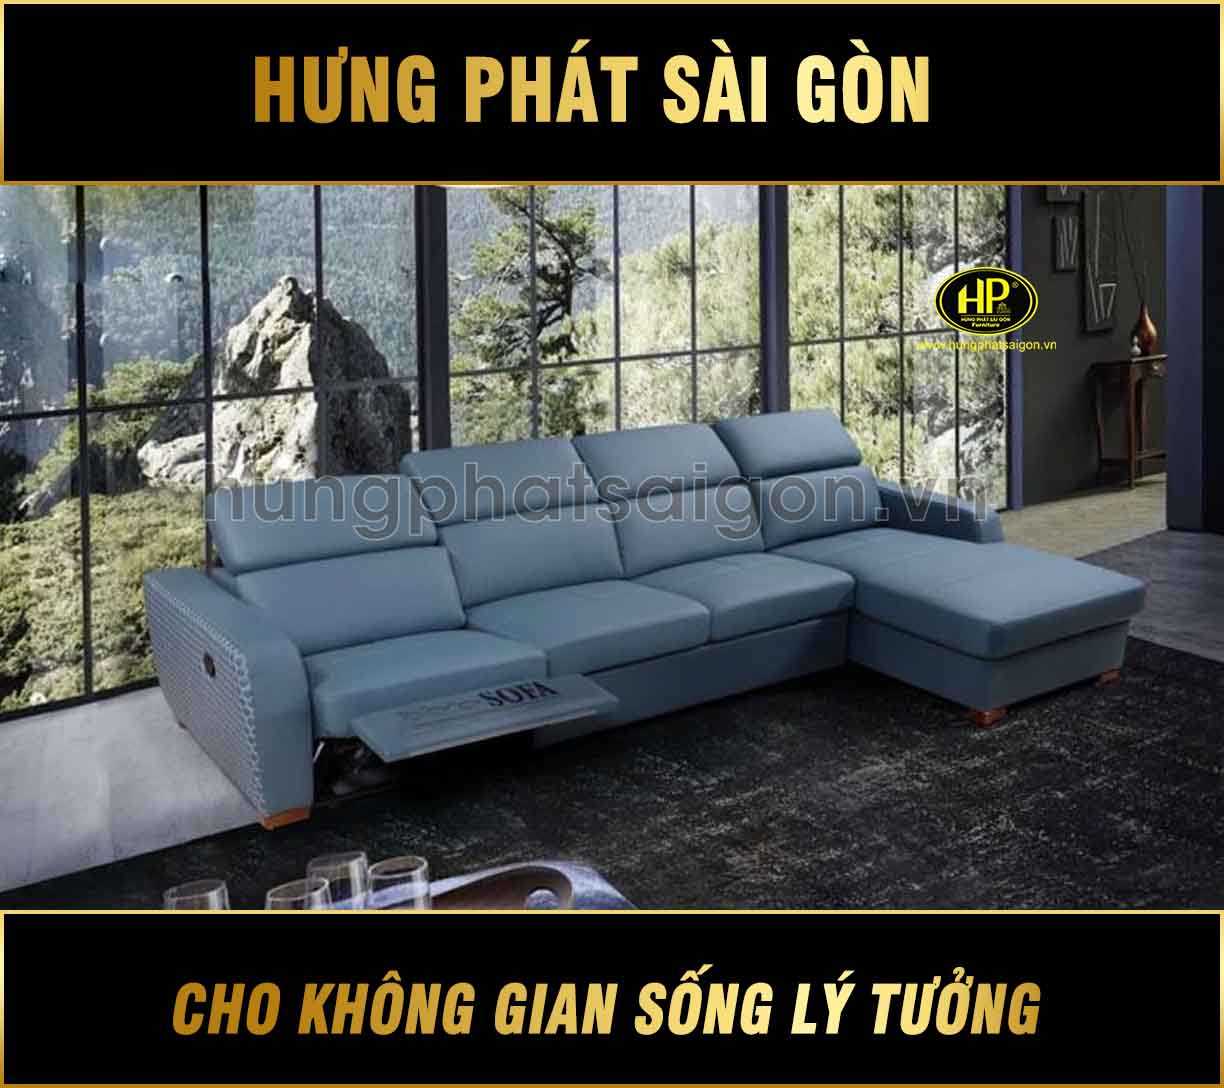 Hưng Phát sài Gòn chuyên cung cấp sofa đa năng đẳng cấp 